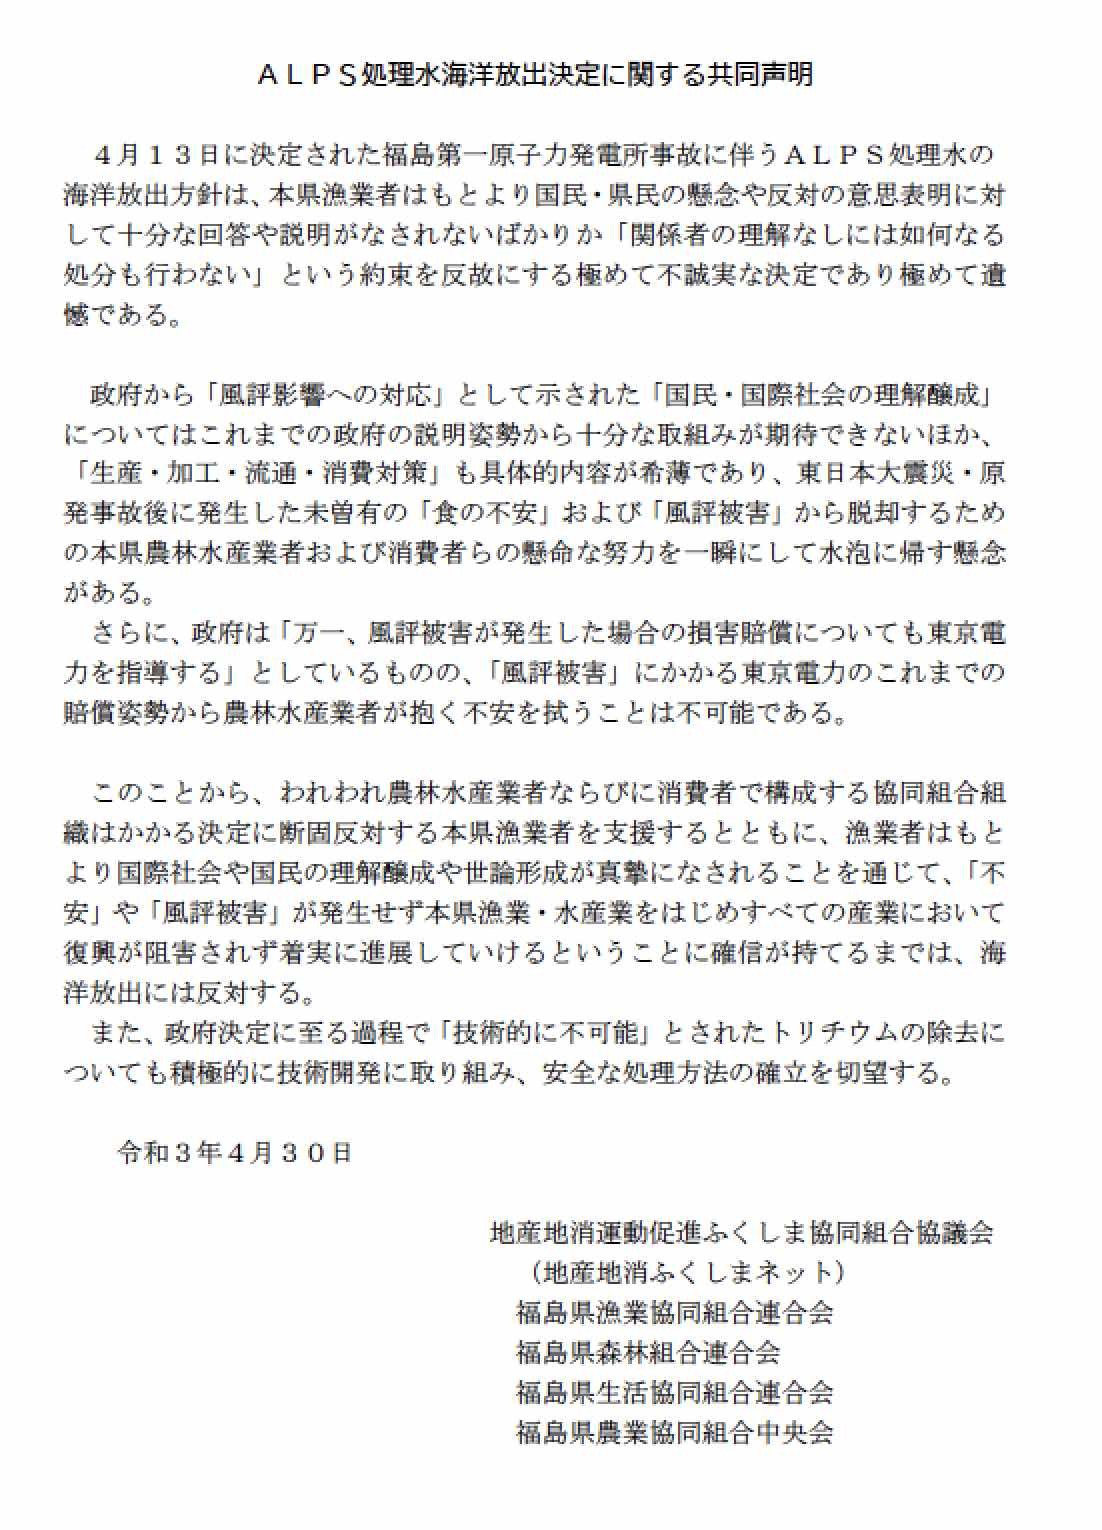 海洋放出反対の共同声明、福島県内農林水産業と消費者の協同組合_e0068696_09081219.jpg